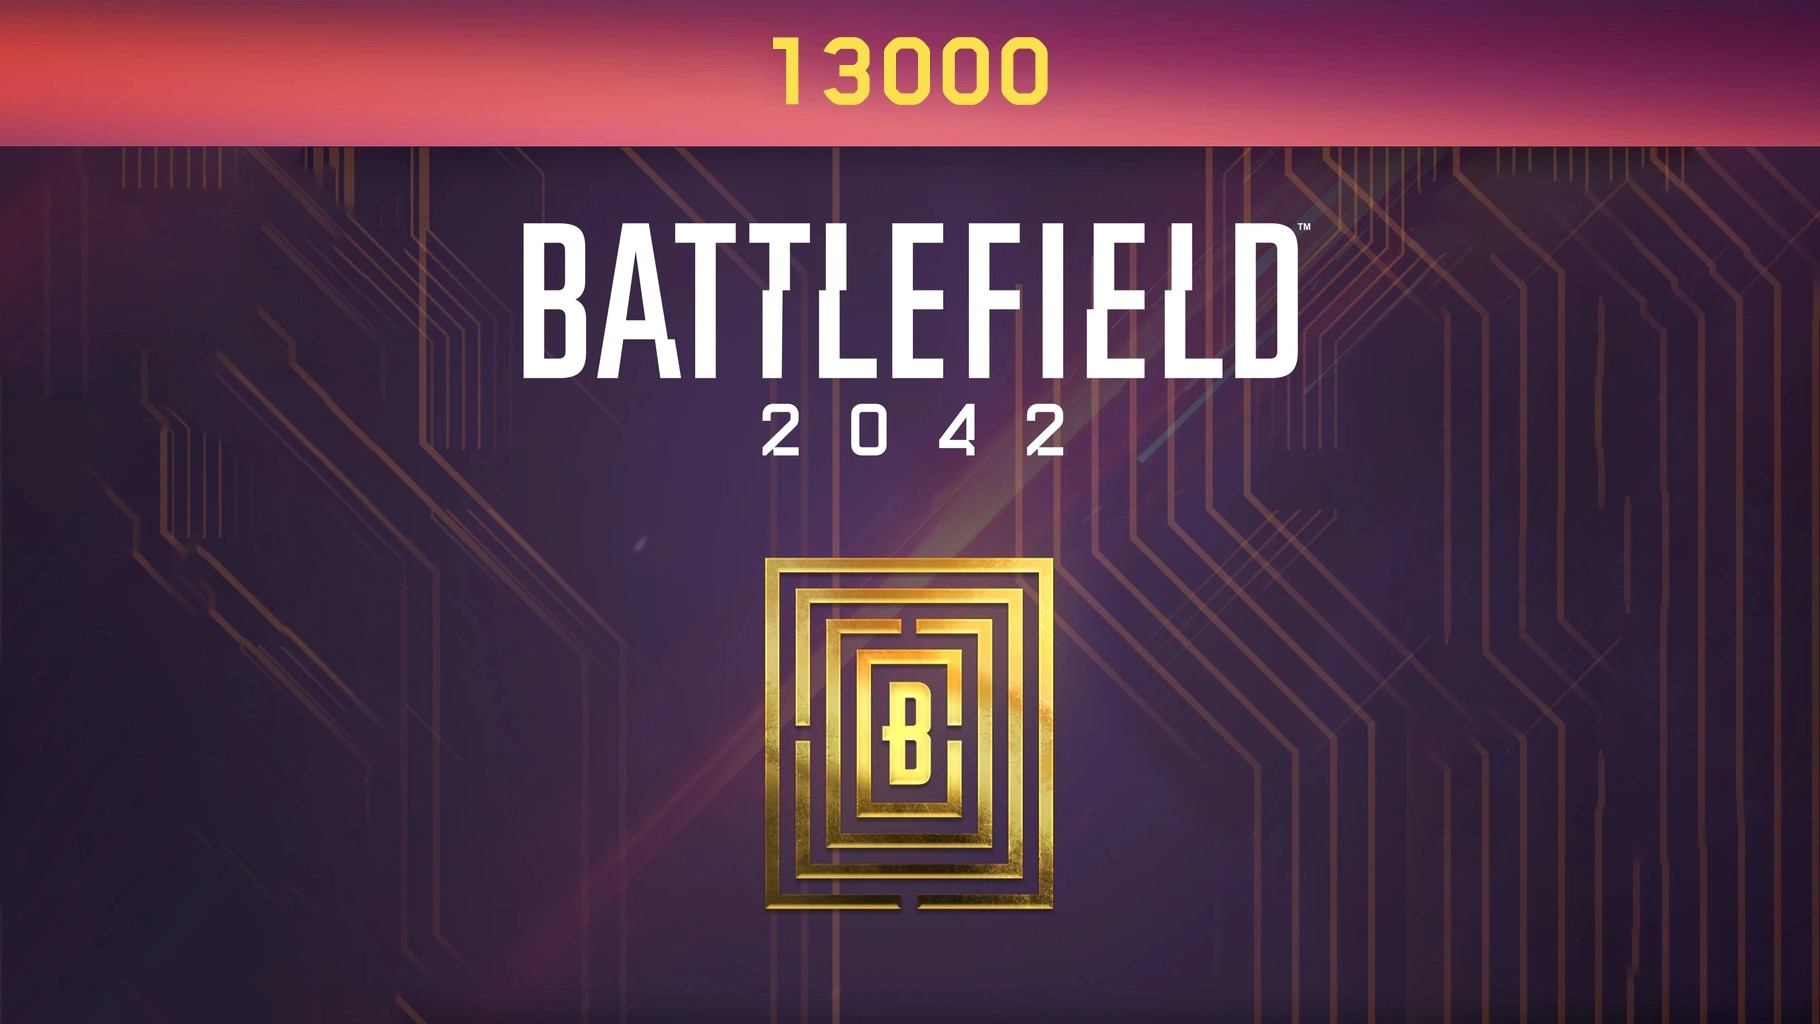 Battlefield 2042 - 13000 BFC Balance XBOX One / Xbox Series X|S CD Key [USD 96.6]